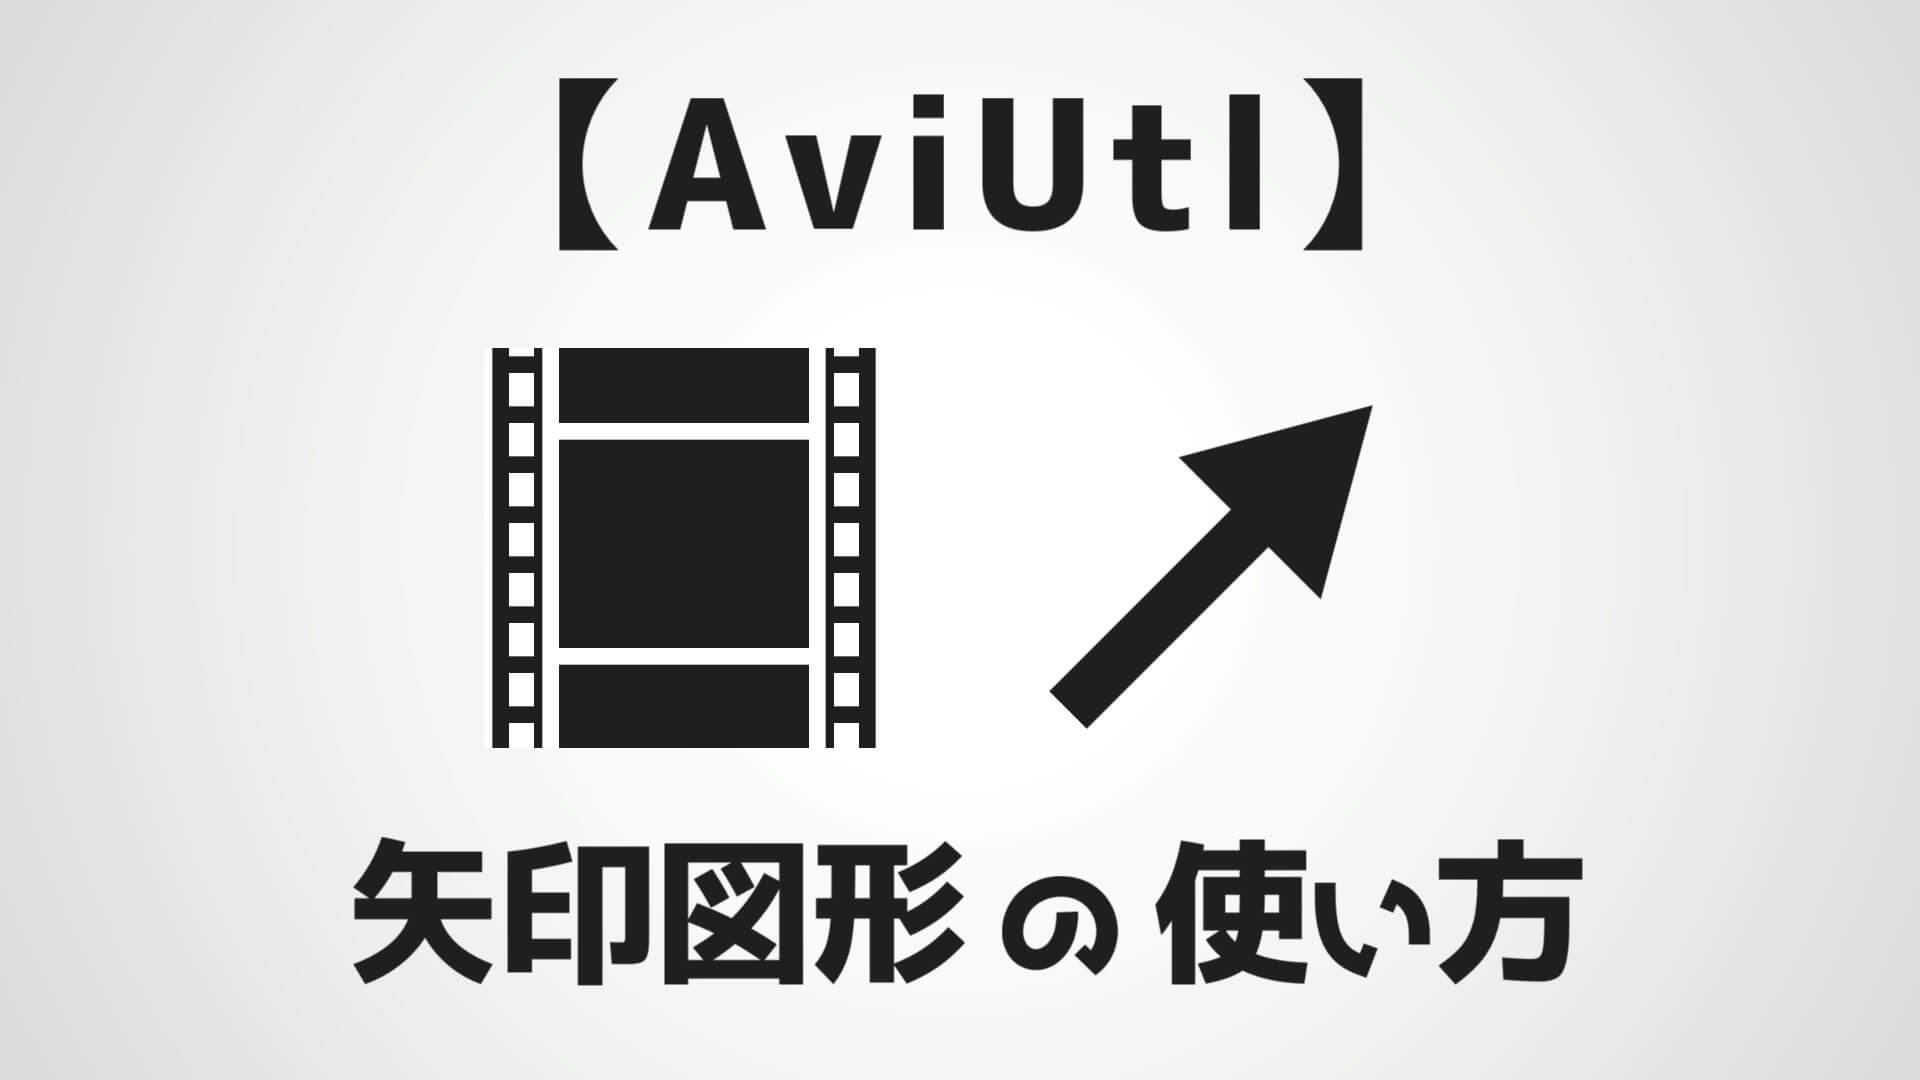 Aviutl 矢印オブジェクトの使い方を解説 伸縮自在で曲線も対応 Aketama Official Blog